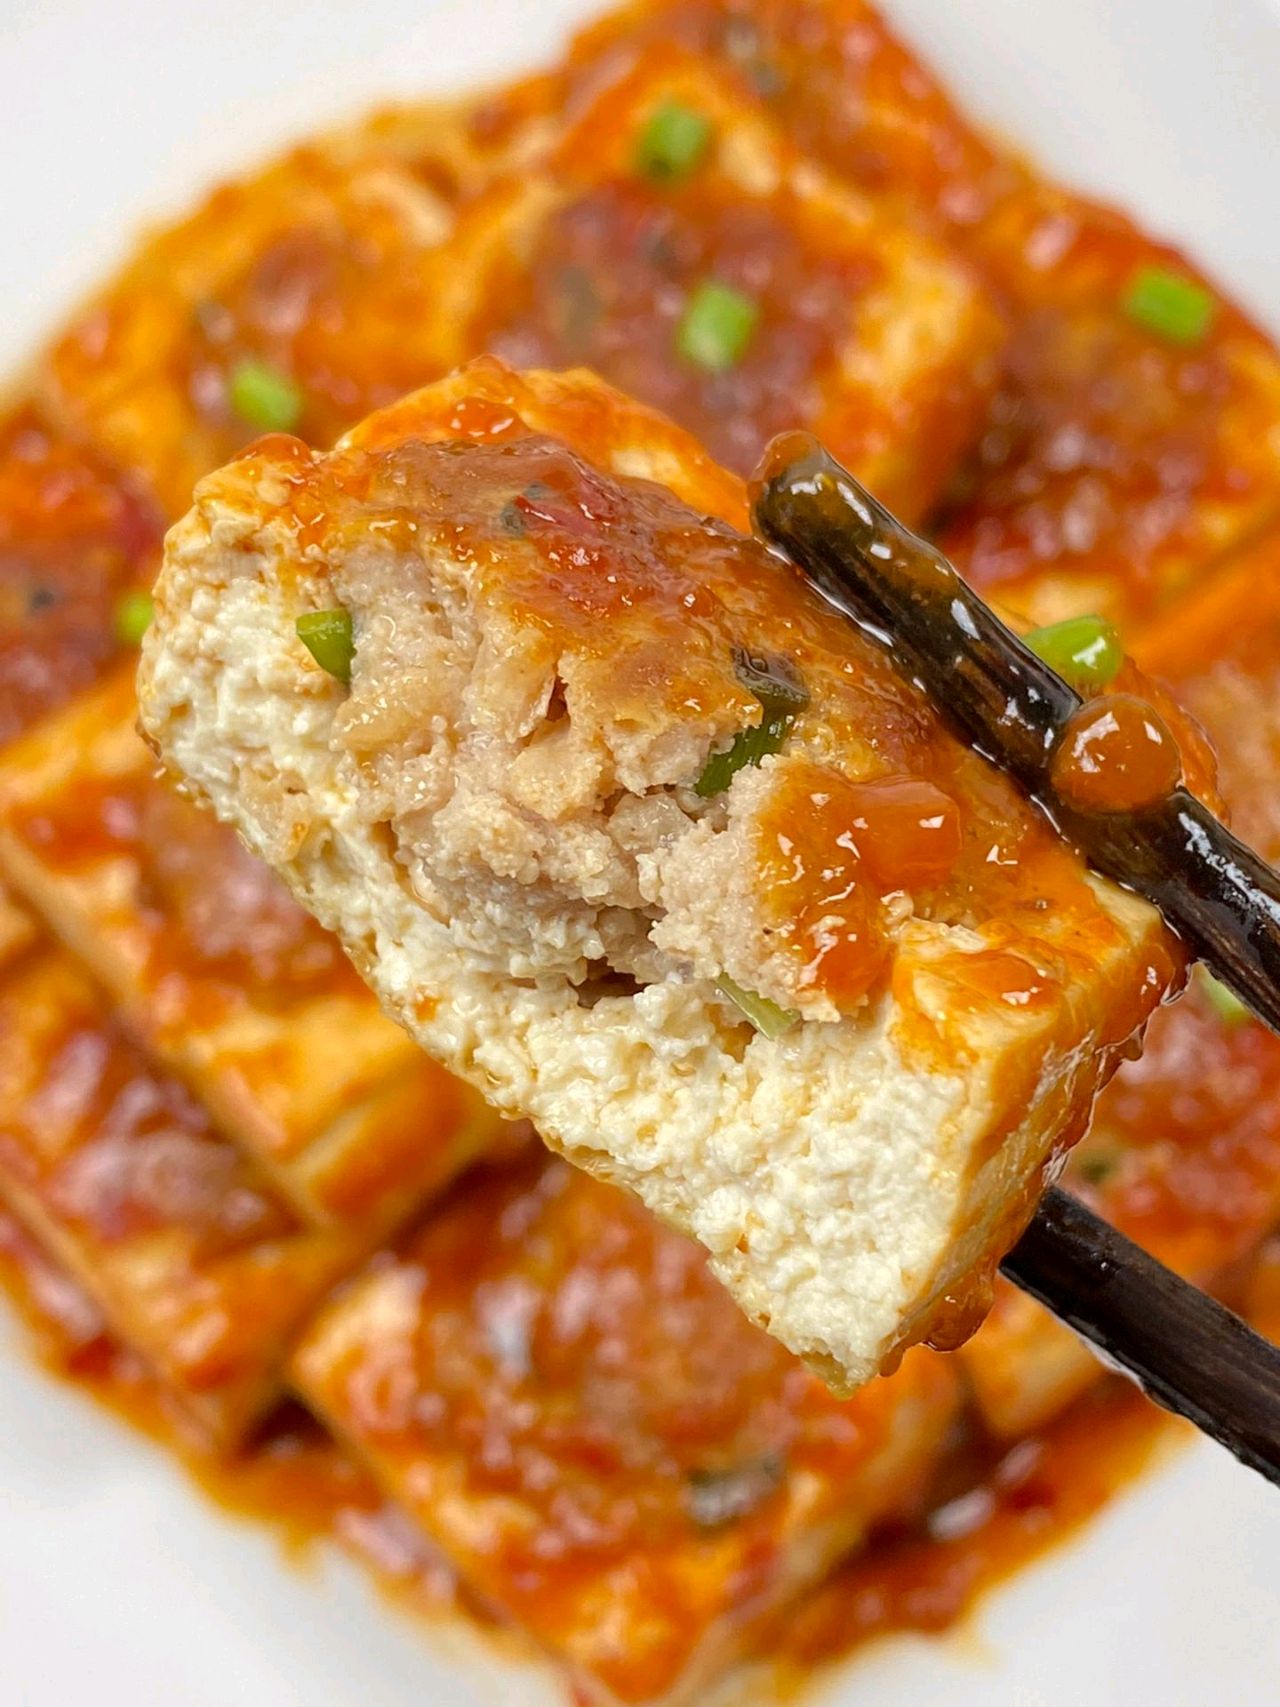 酿豆腐的做法 - 酿豆腐怎么做 - 寻餐网